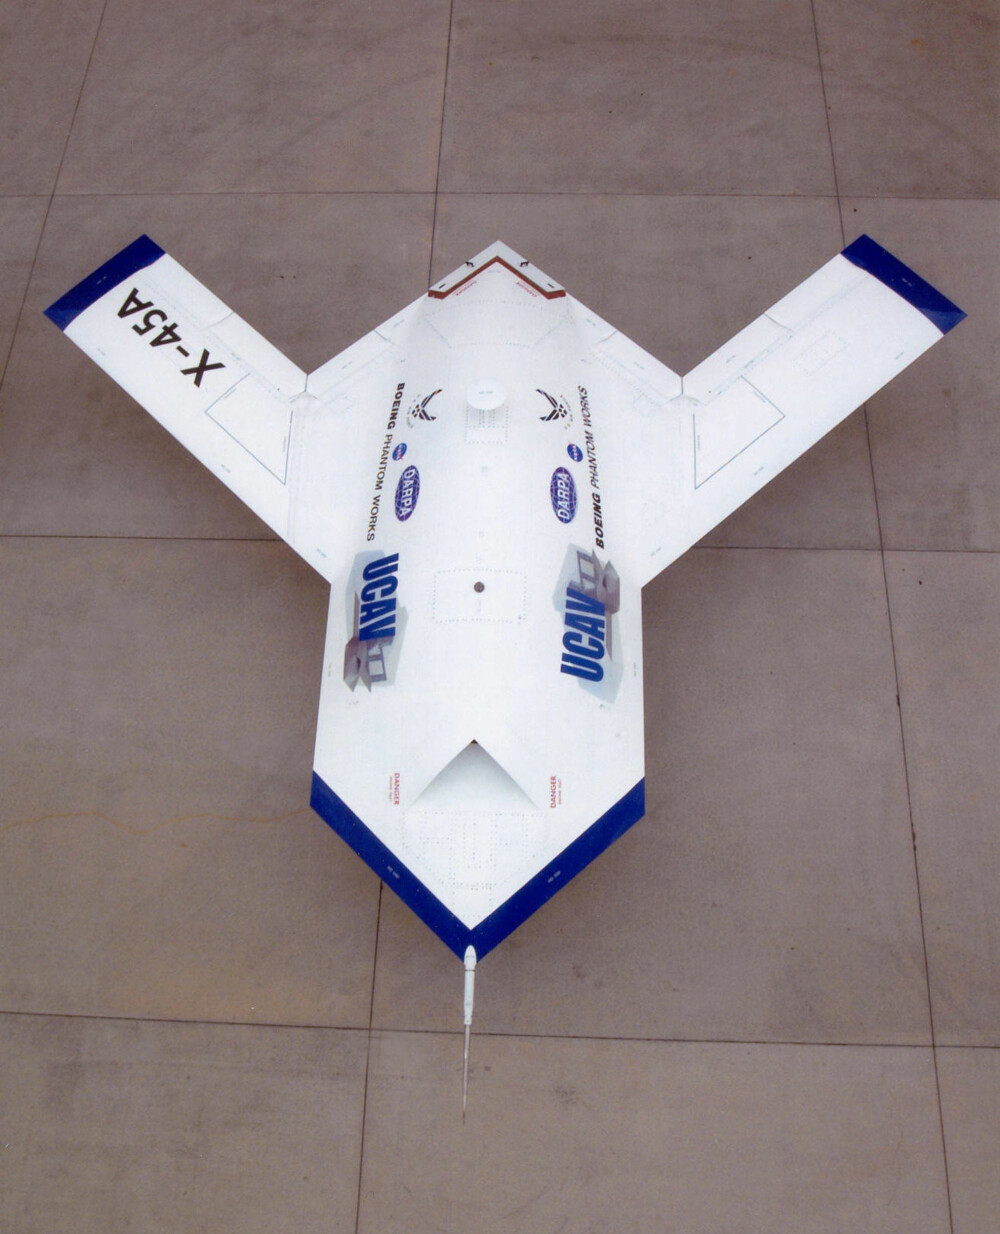 X-45: Teknologi og design fra Bird of Prey endte opp i droneprosjektet X-45 - et konsept som skulle demonstrere mulighetene for framtidige, ubemannende militære fly.